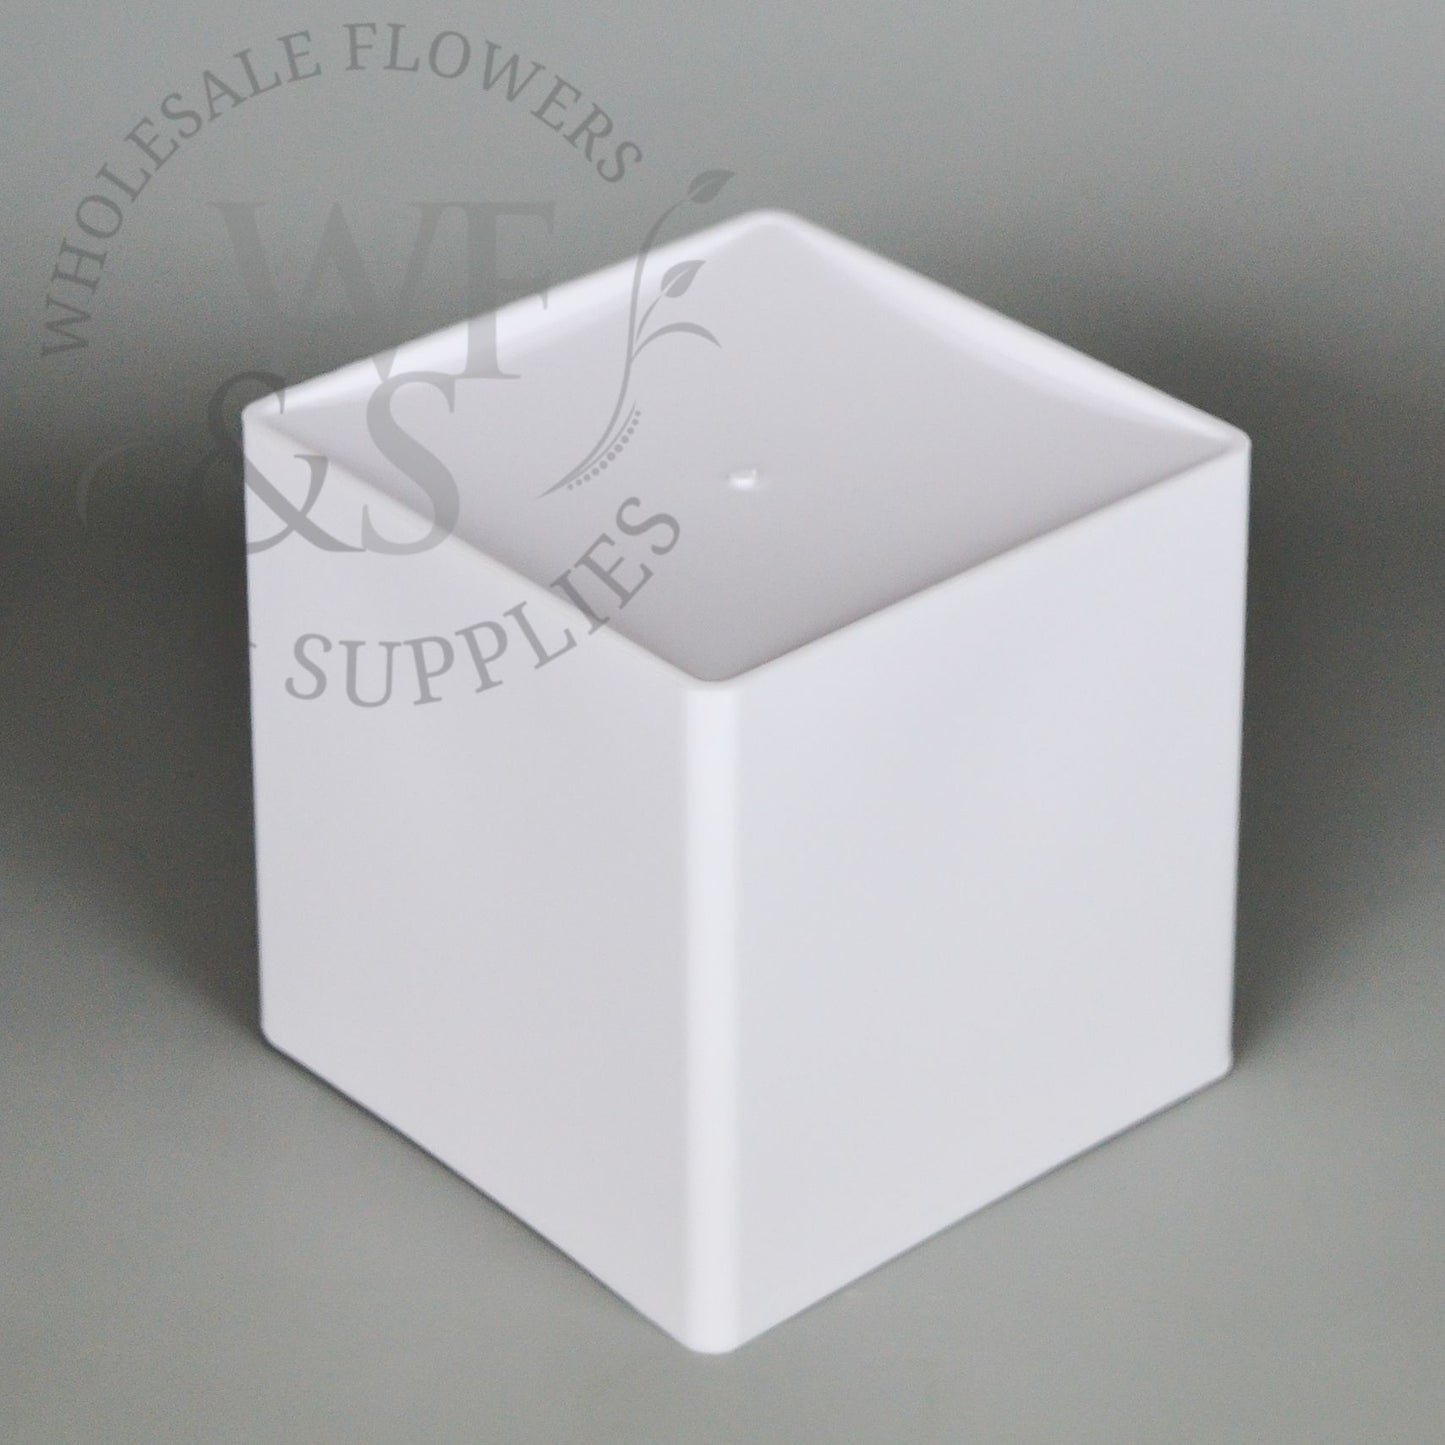 6" Plastic Cube Vase - White